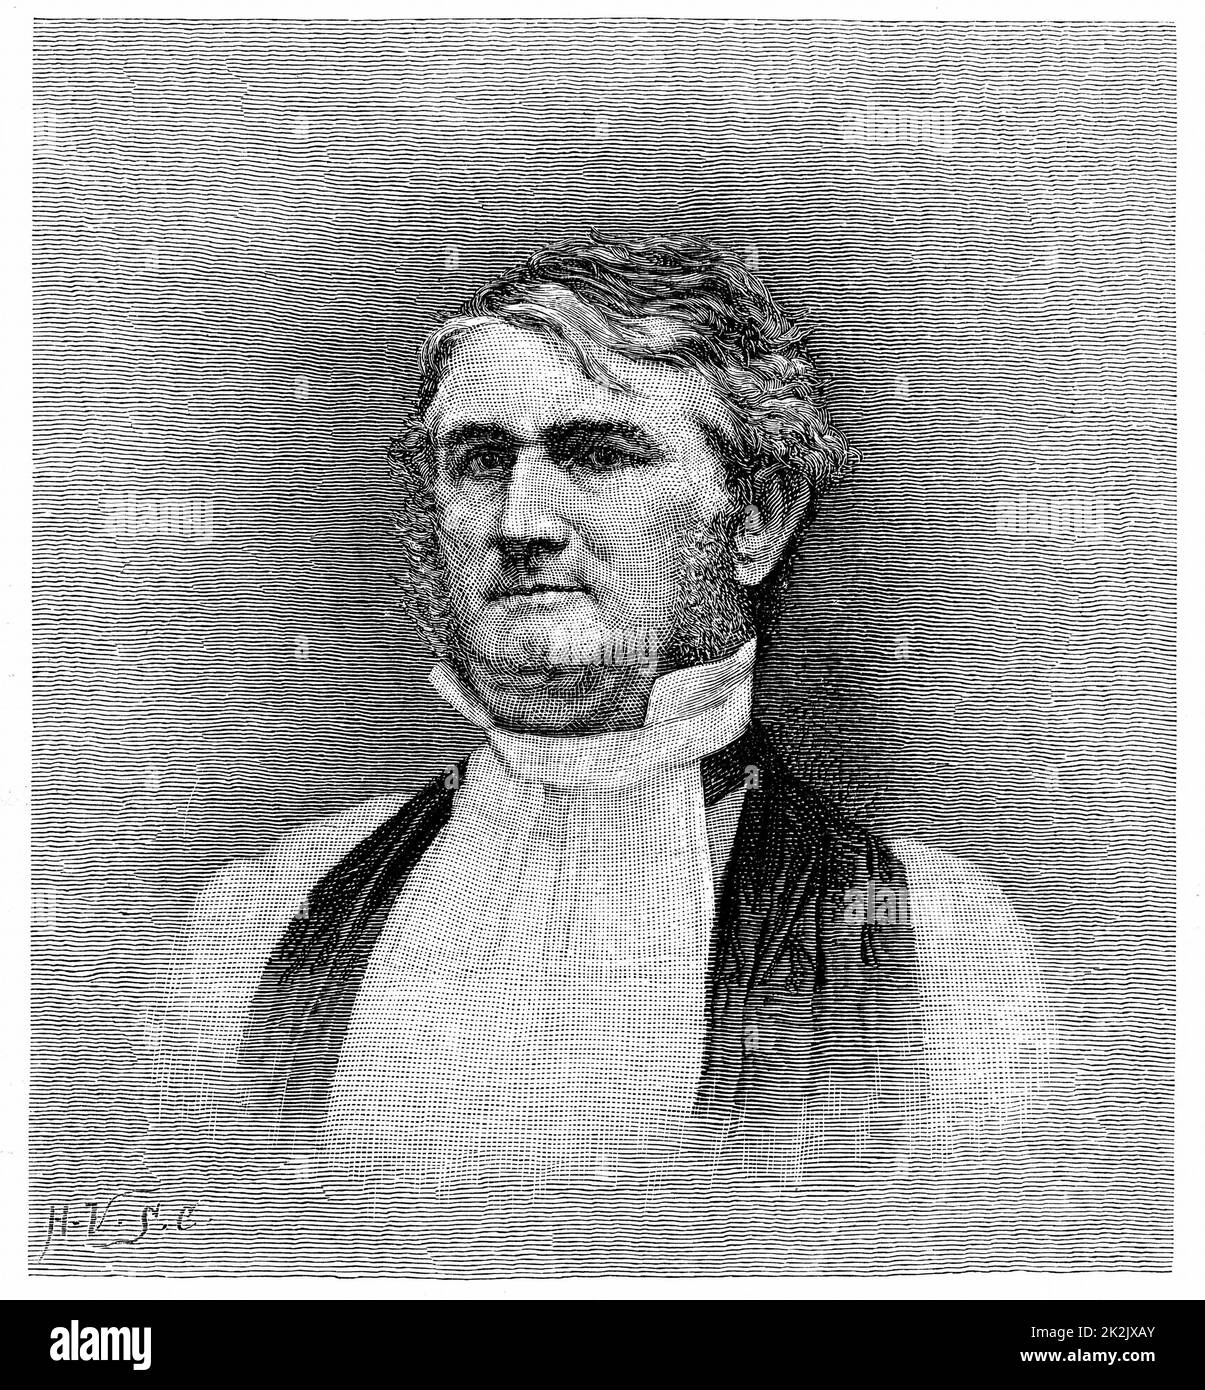 Leonidas Polk (1806-1864) Clerico e soldato americano. Vescovo di Arkansas 1838, di Louisiana dal 1841. Corpi comandati di truppe confederate durante la guerra civile americana 1861-1865. Incisione Foto Stock